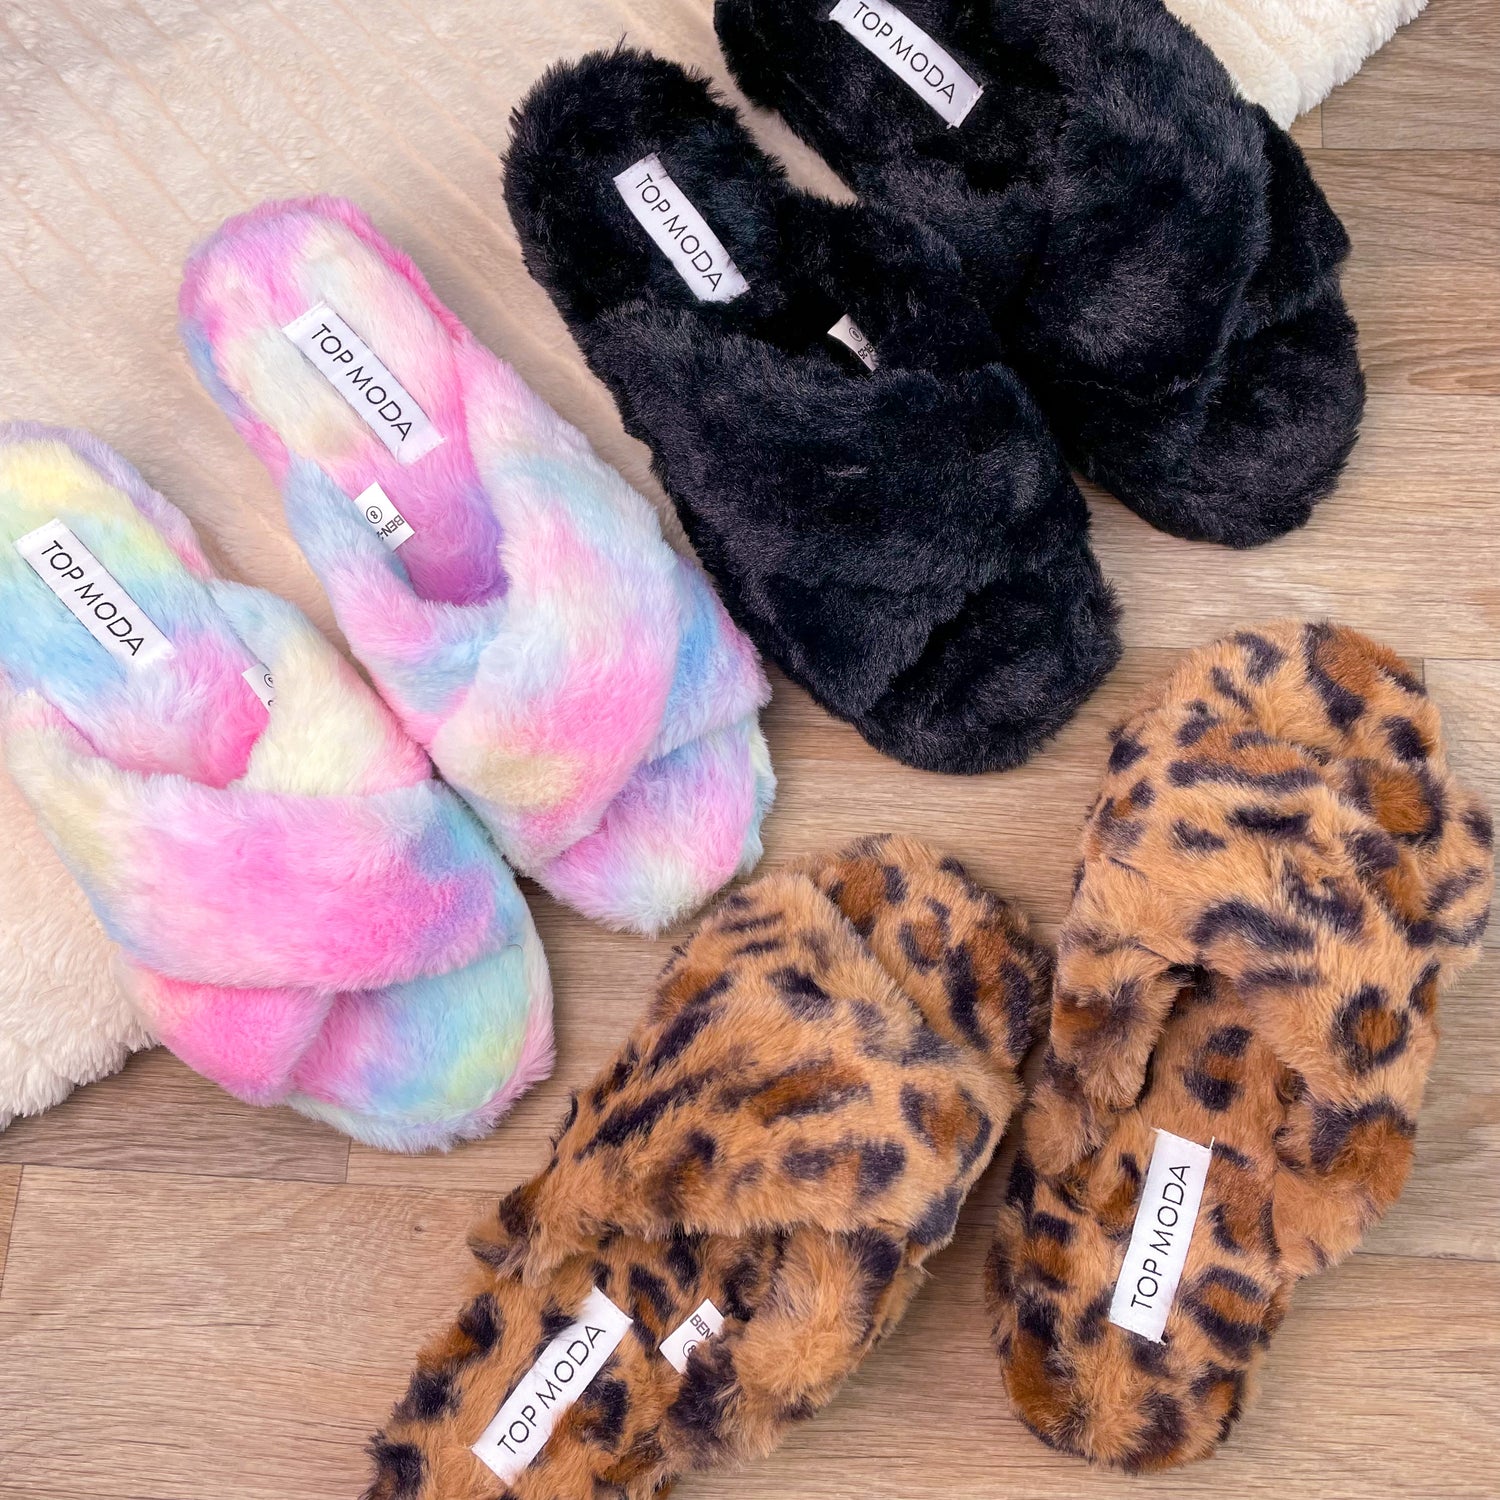 Top moda Ben-25 slippers leopard tie dye black